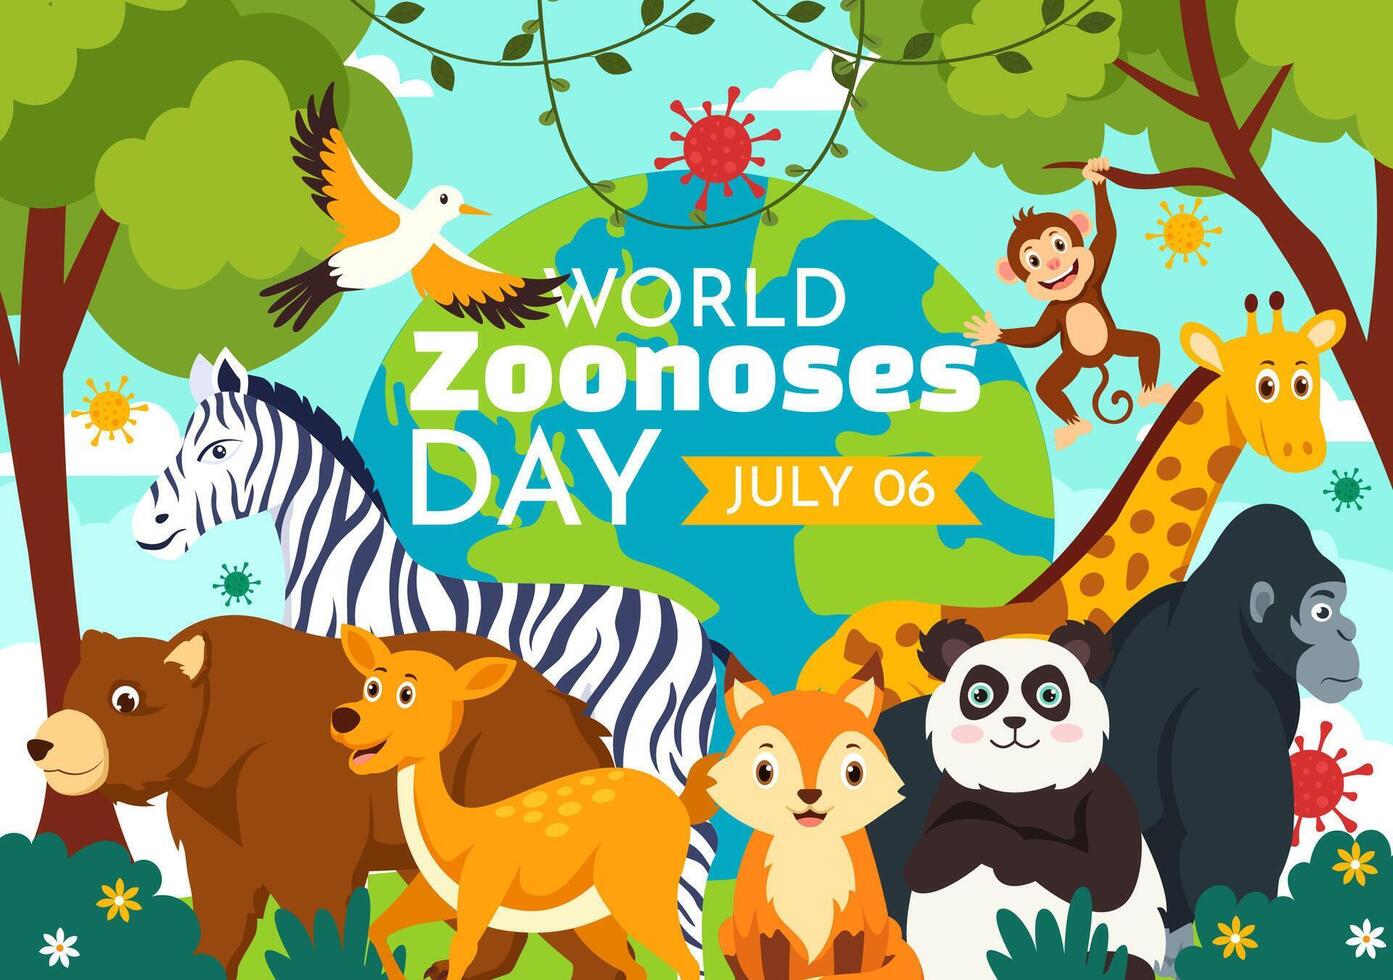 monde zoonoses journée illustration sur 6 juillet avec divers animaux et plante lequel est dans le forêt à protéger dans plat dessin animé Contexte conception vecteur